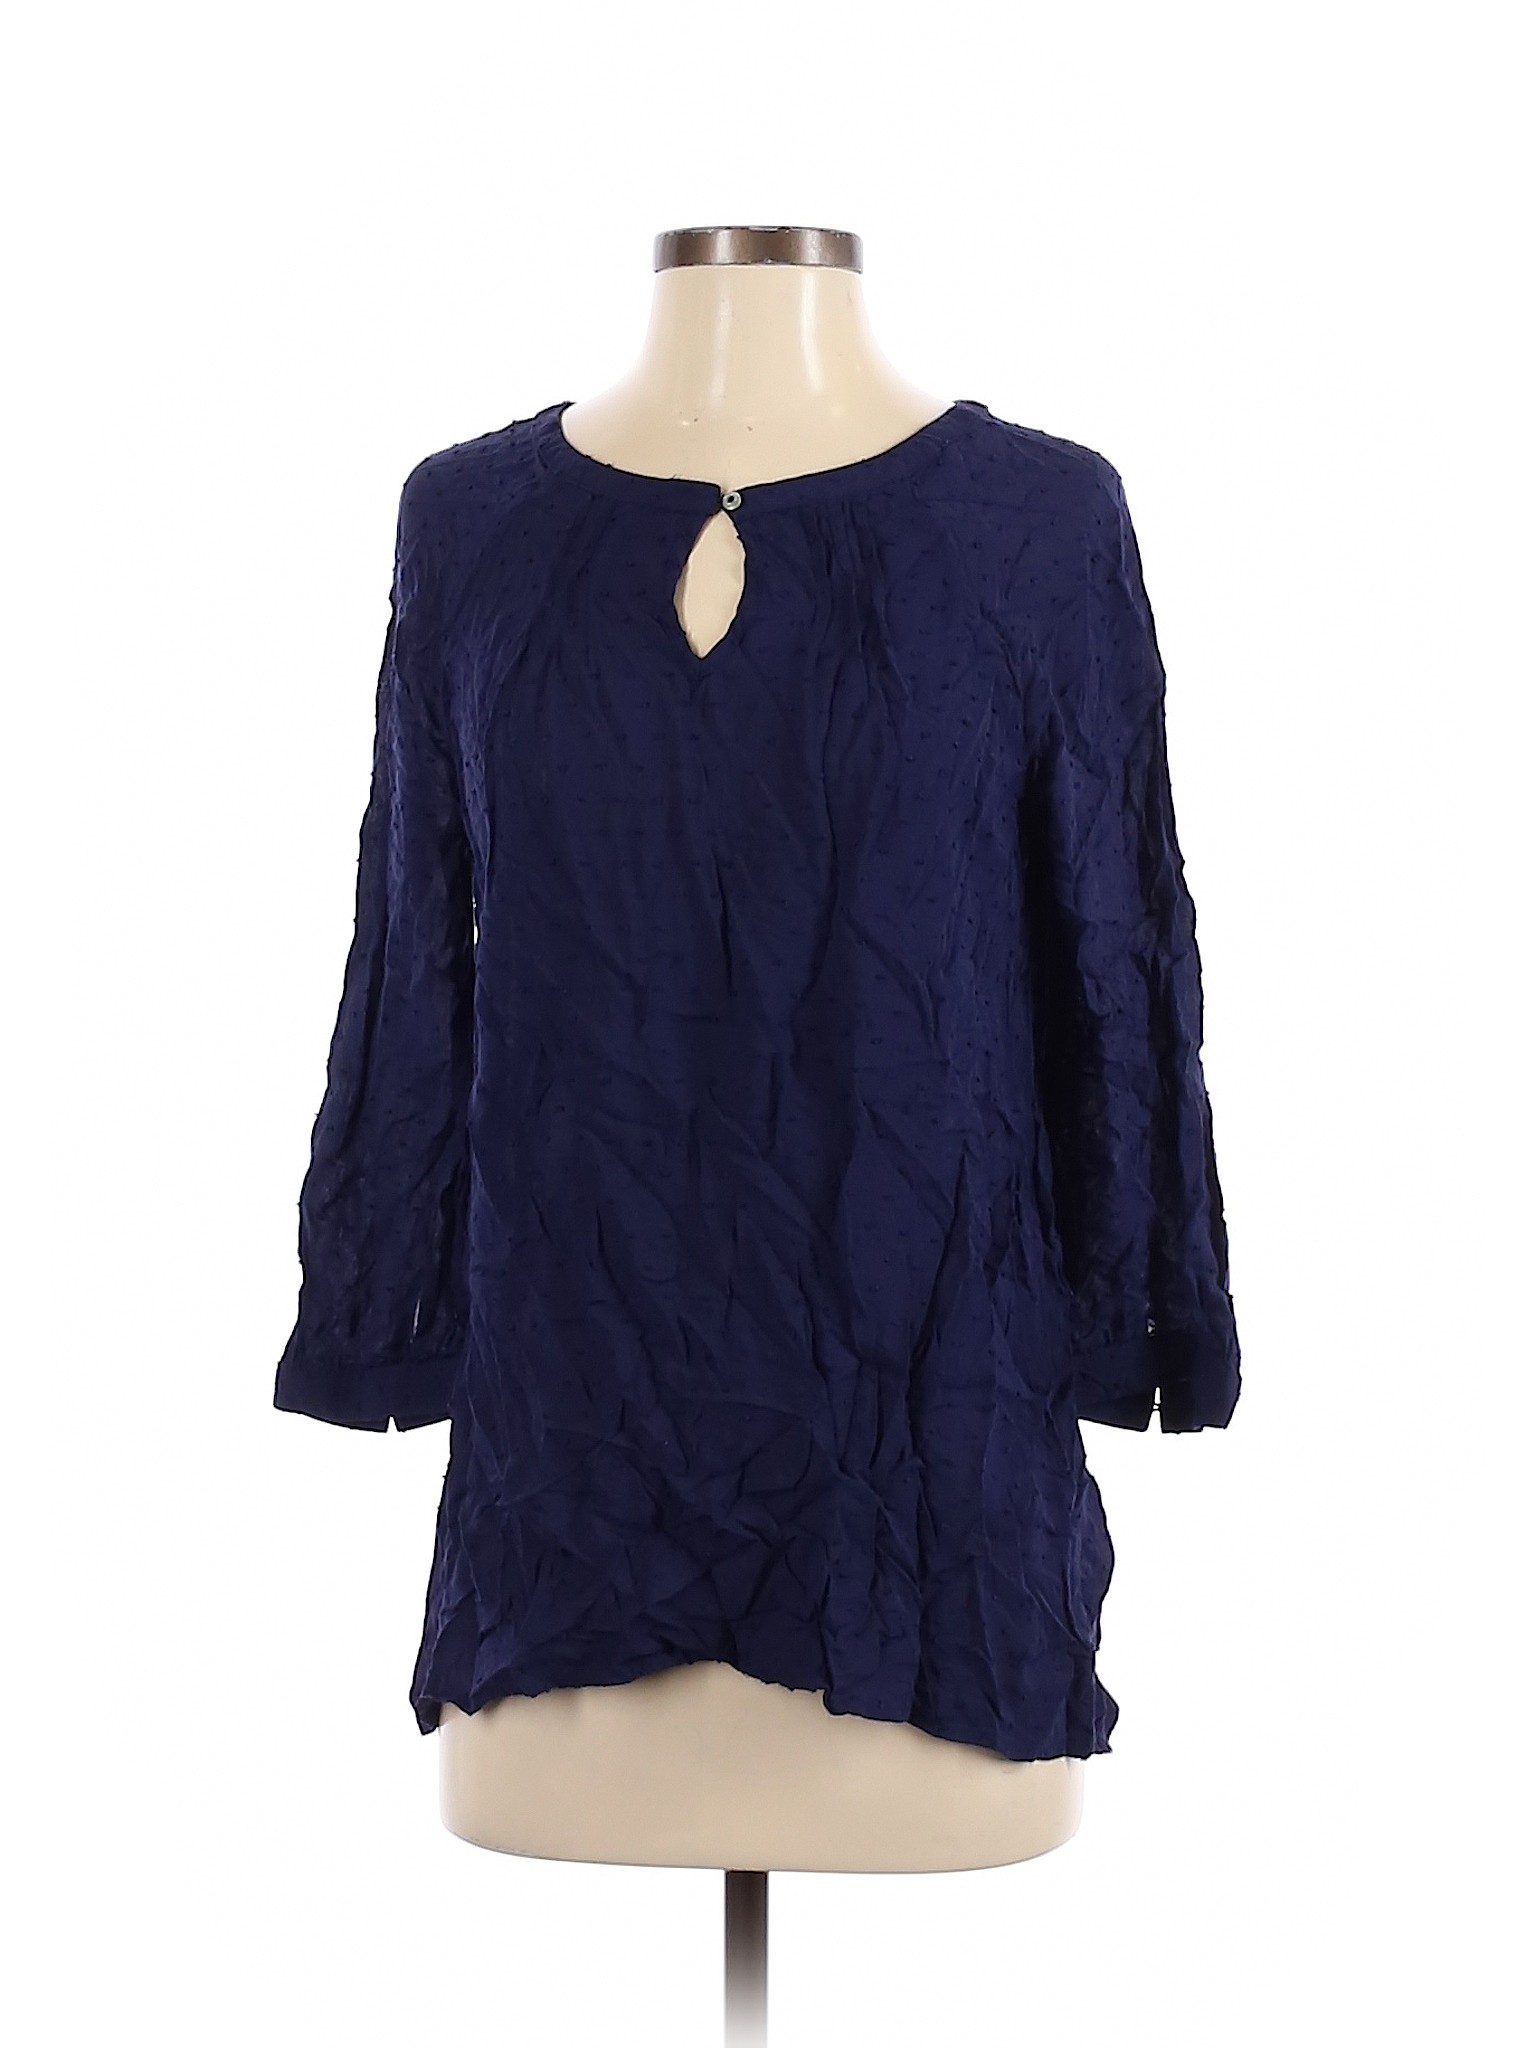 Great Northwest Indigo Women Blue 3/4 Sleeve Blouse S | eBay